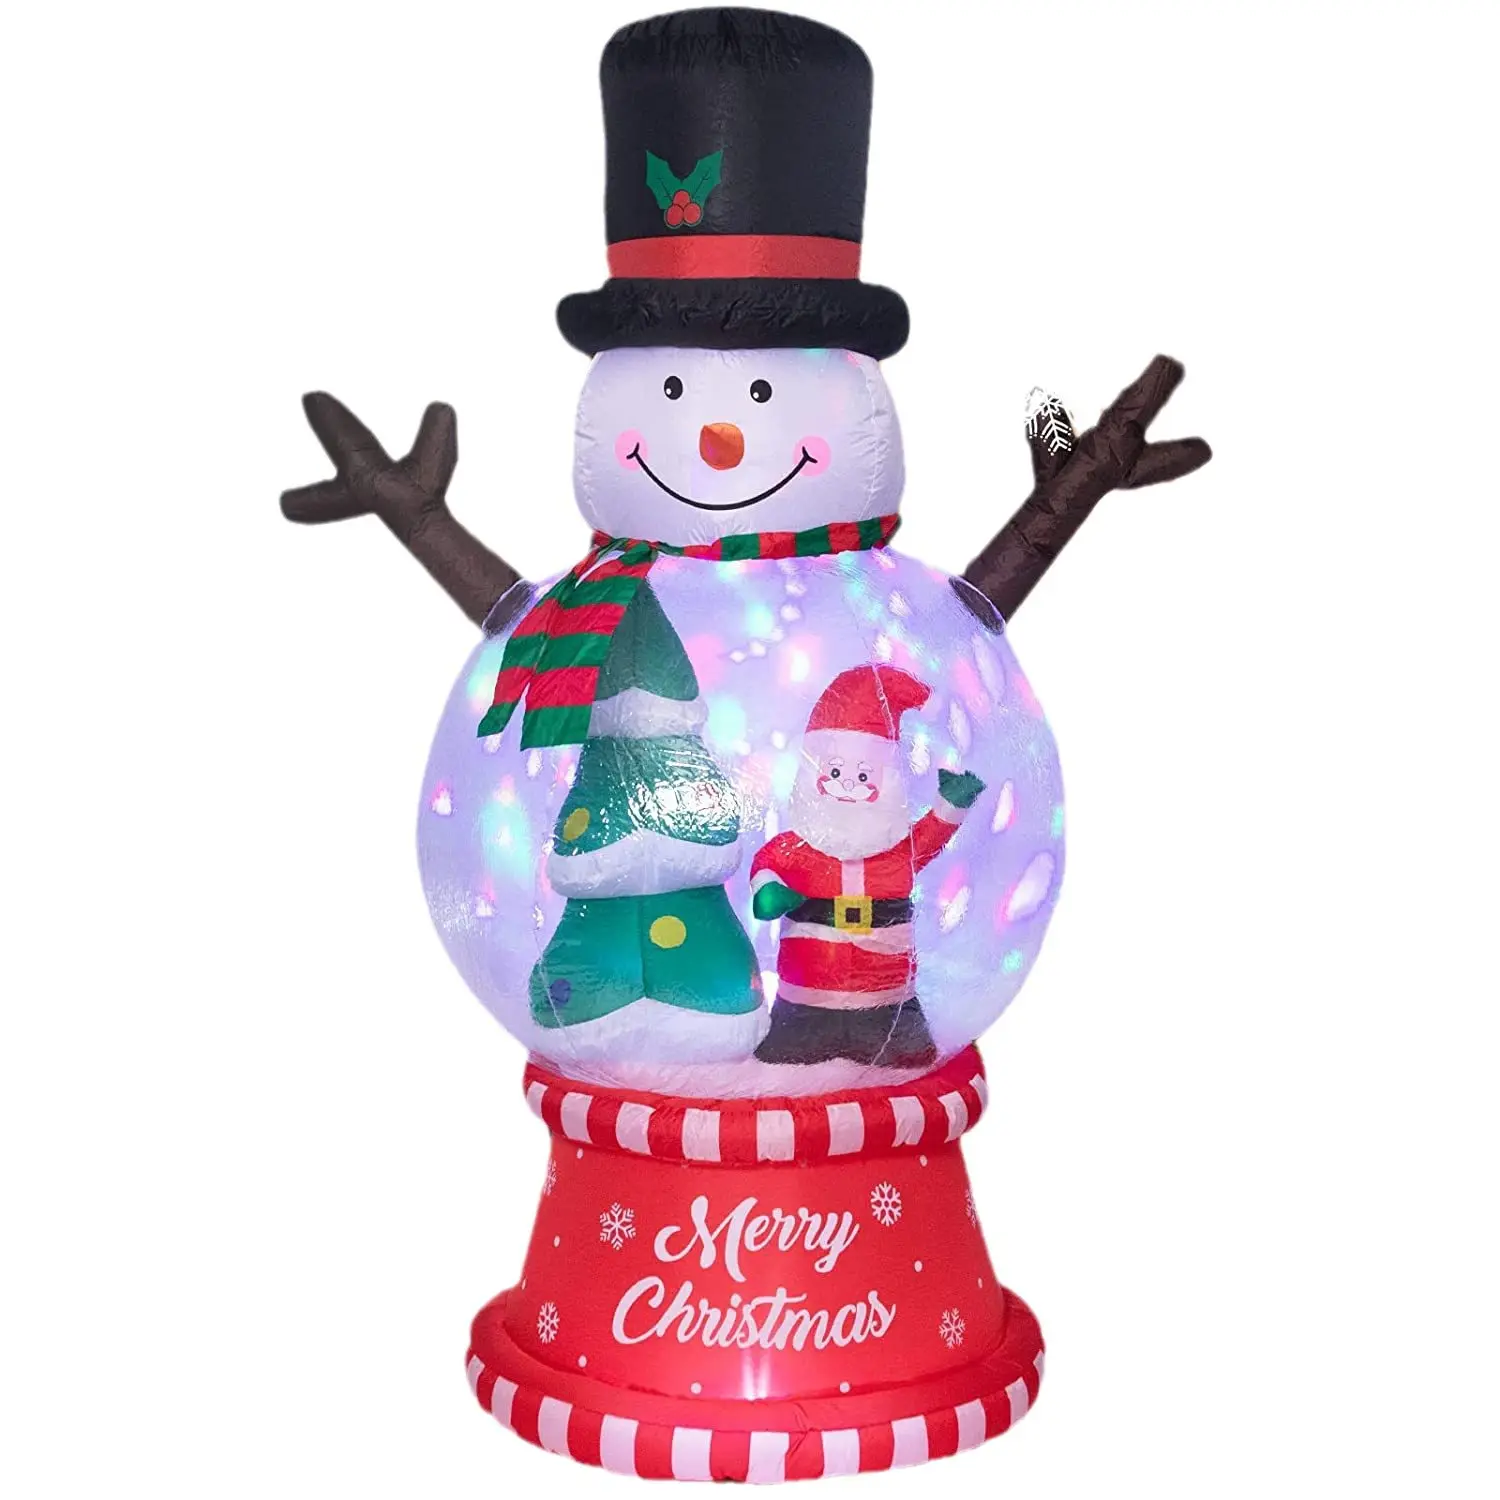 كرة كريستال لشخصية شخصية snowman المضيئة مصابيح شجر سانتا كلوز قابلة للنفخ تدور حول شكل كرة مضيئة لتزيين ليلة الكريسماس